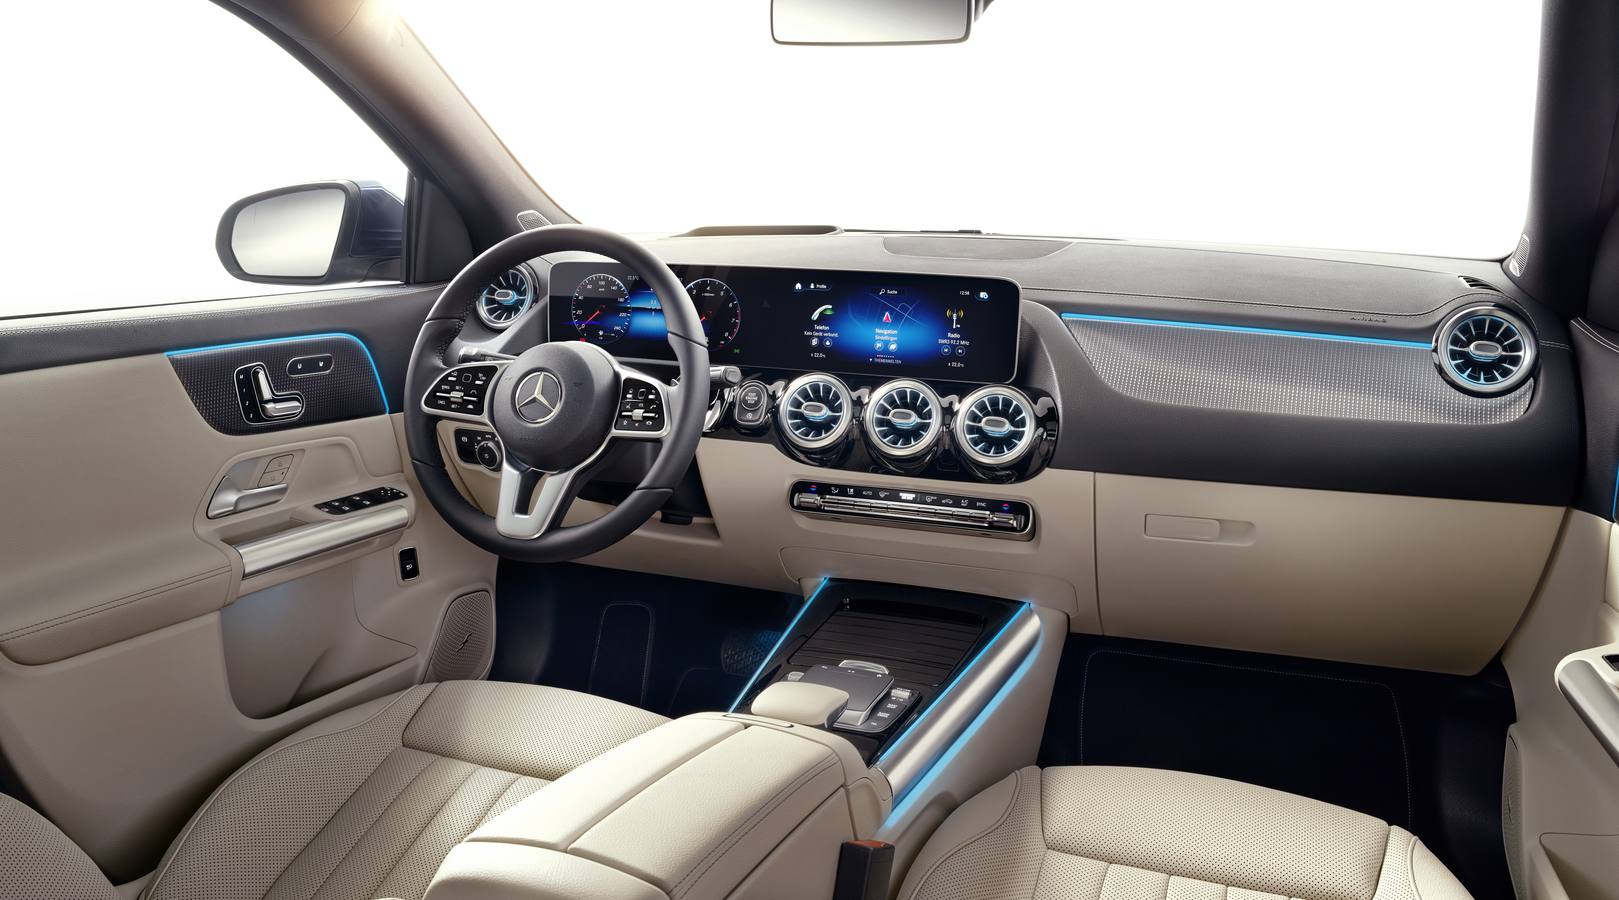 Fotos: El nuevo Mercedes GLA, en imágenes